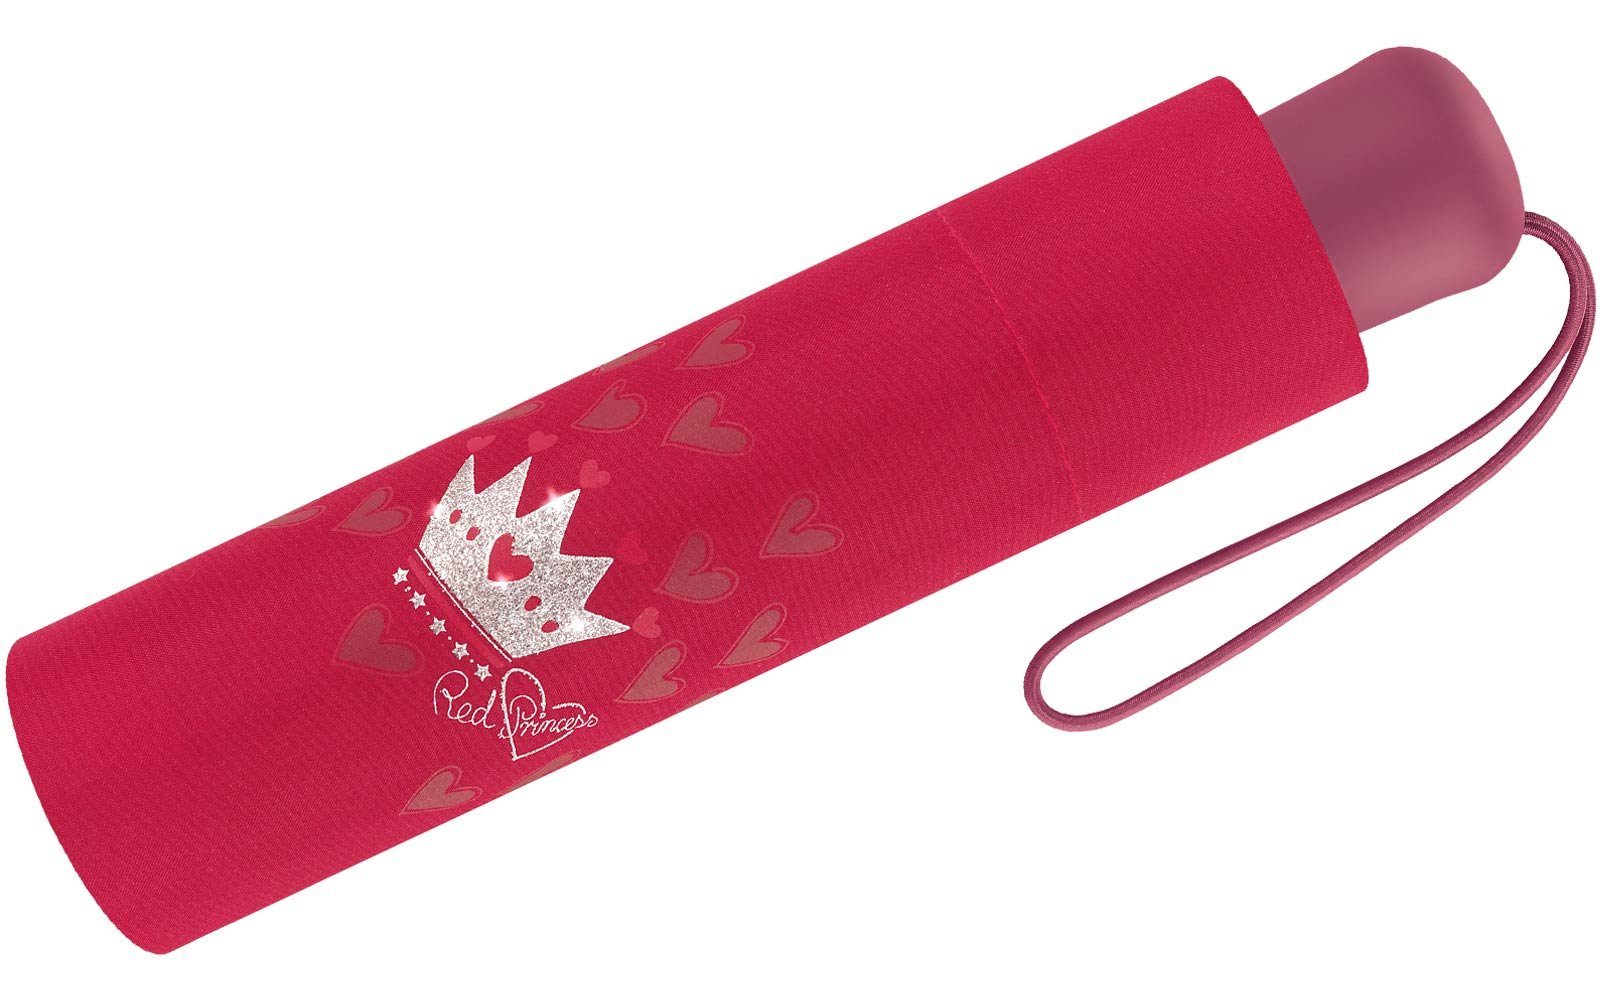 reflektierend Scout Mini Taschenregenschirm bedruckt, rot leicht Basic Kinderschirm